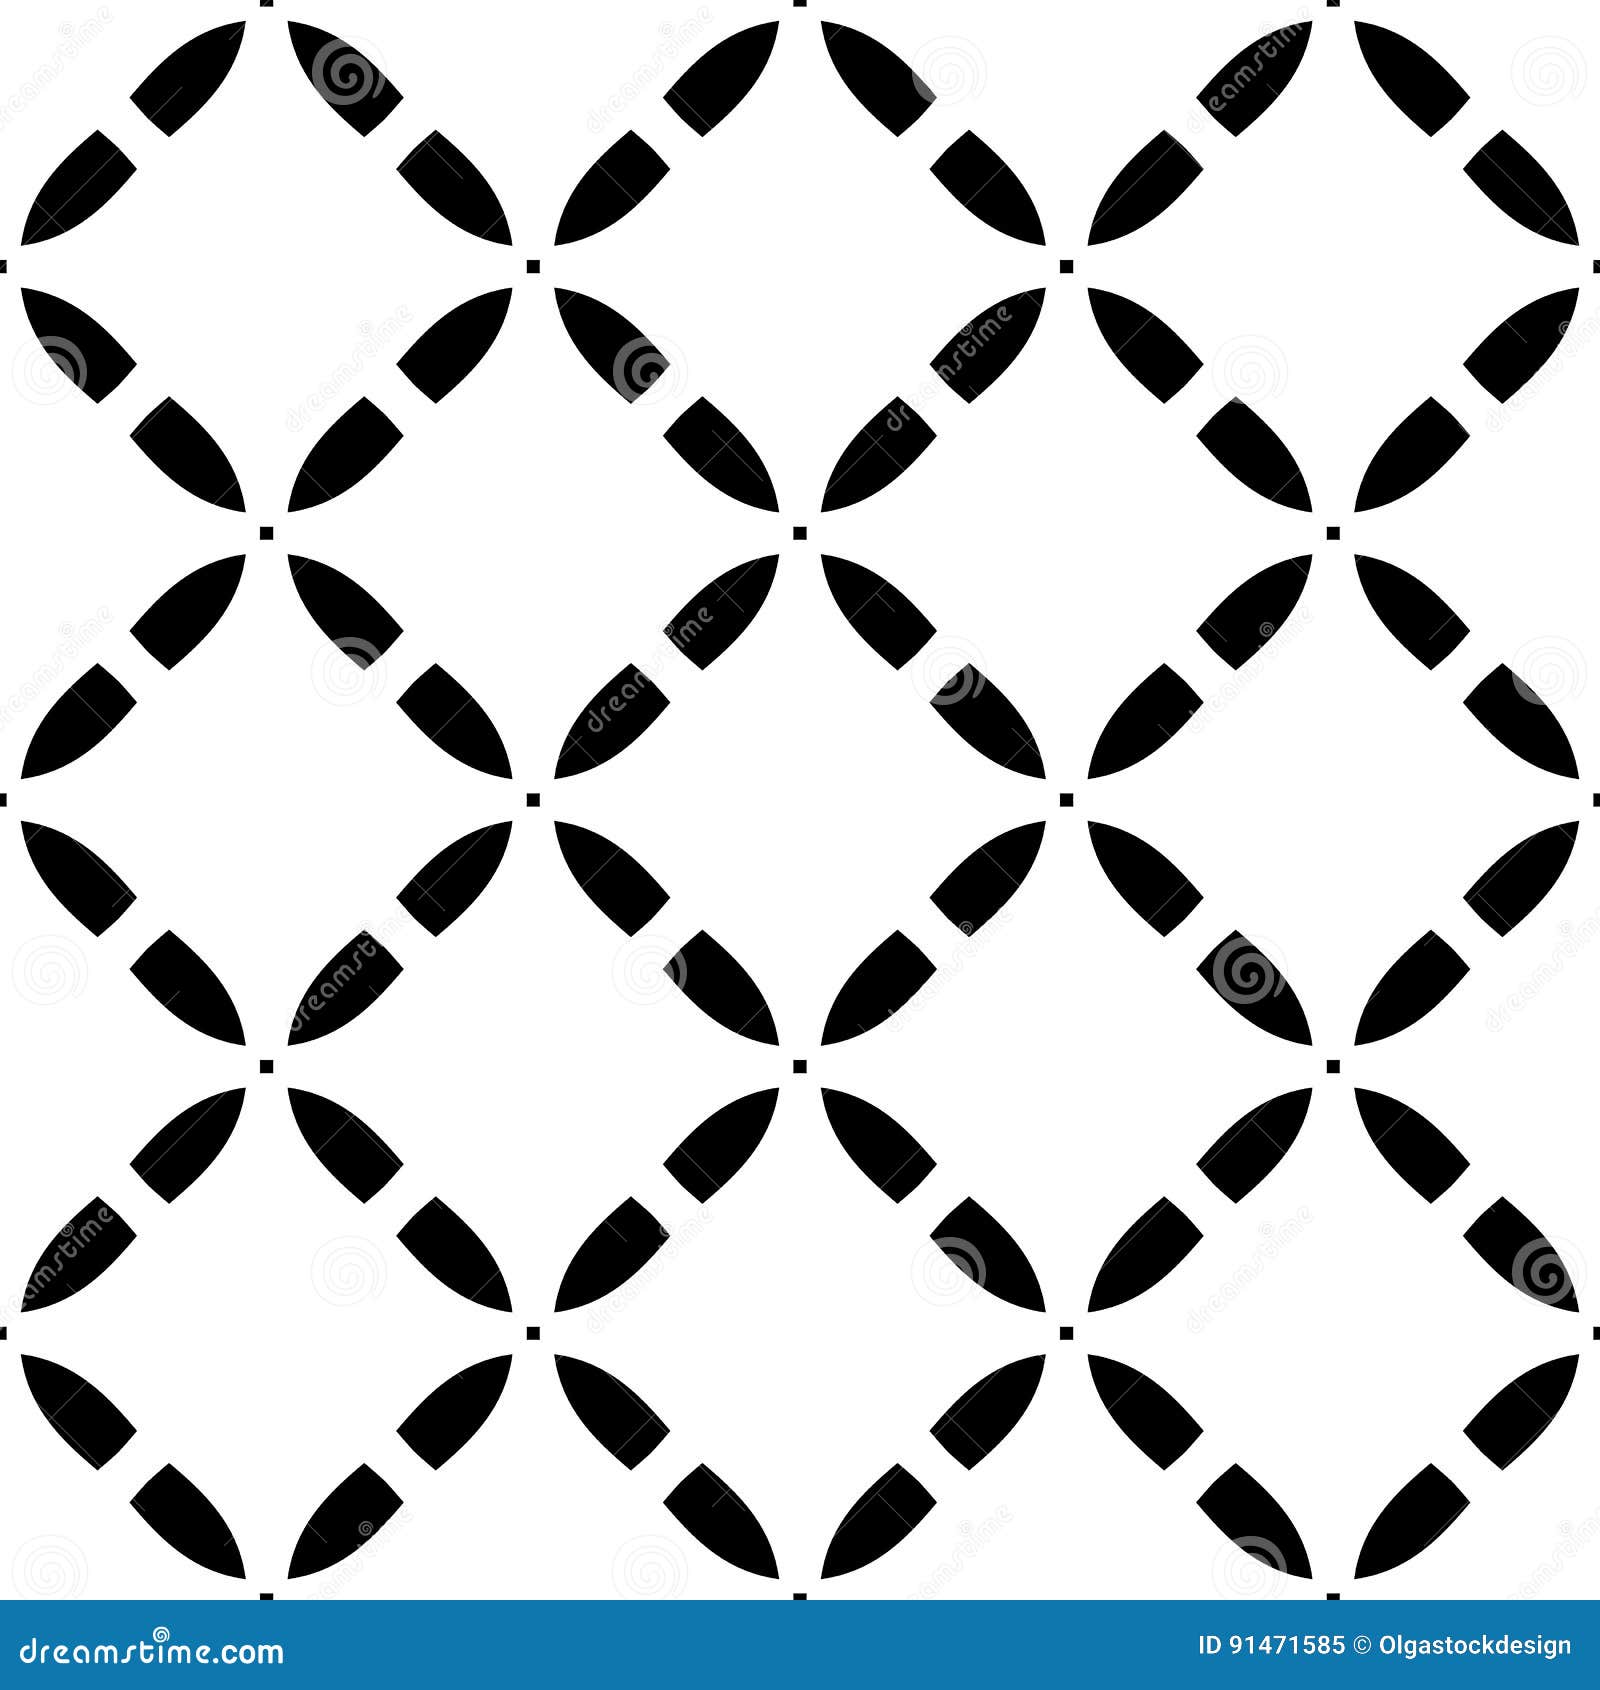 Vector naadloos patroon, diagonale roostertextuur. Vector naadloos patroon Eenvoudige zwarte & witte zwart-wit textuur, illustratie van diagonaal rooster, vlotte geometrische cijfers Abstract herhaal achtergrond Ontwerp voor drukken, digitaal, textiel, dekking